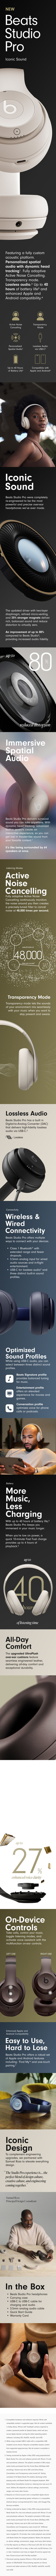 Beats Studio Pro Wireless Headphones Brown - Deep